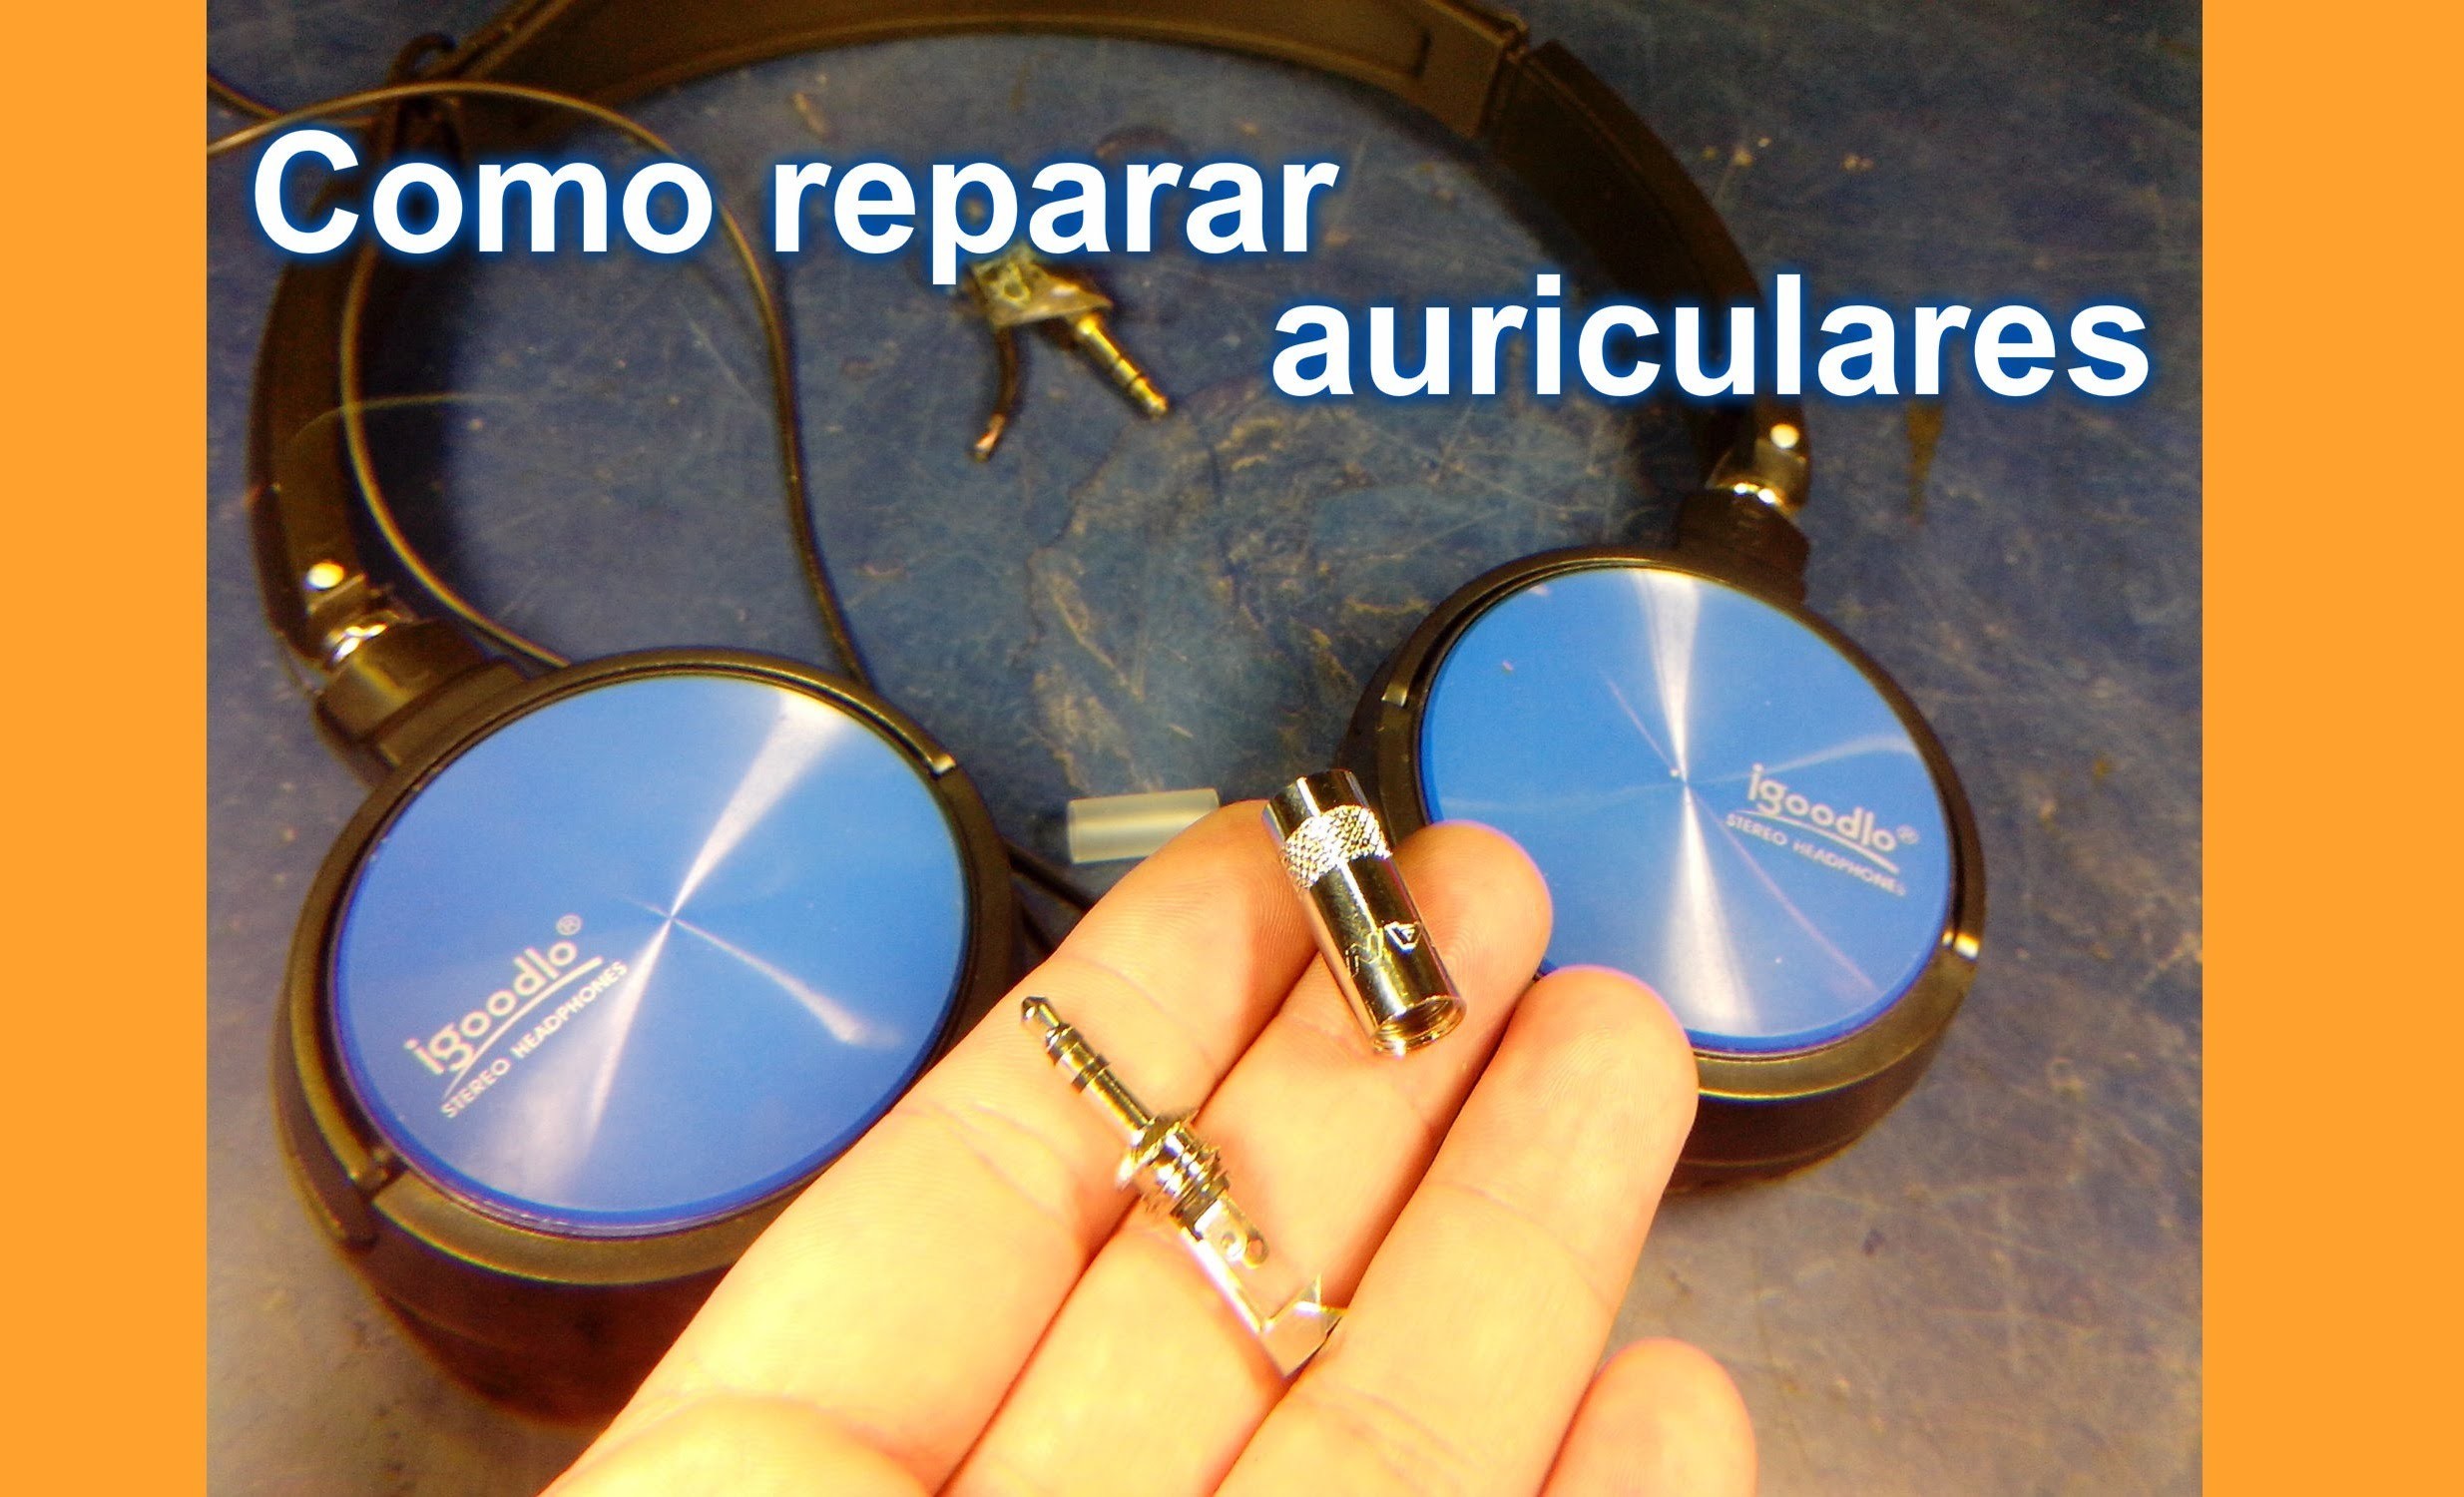 Como reparar auriculares - cambio de miniplug